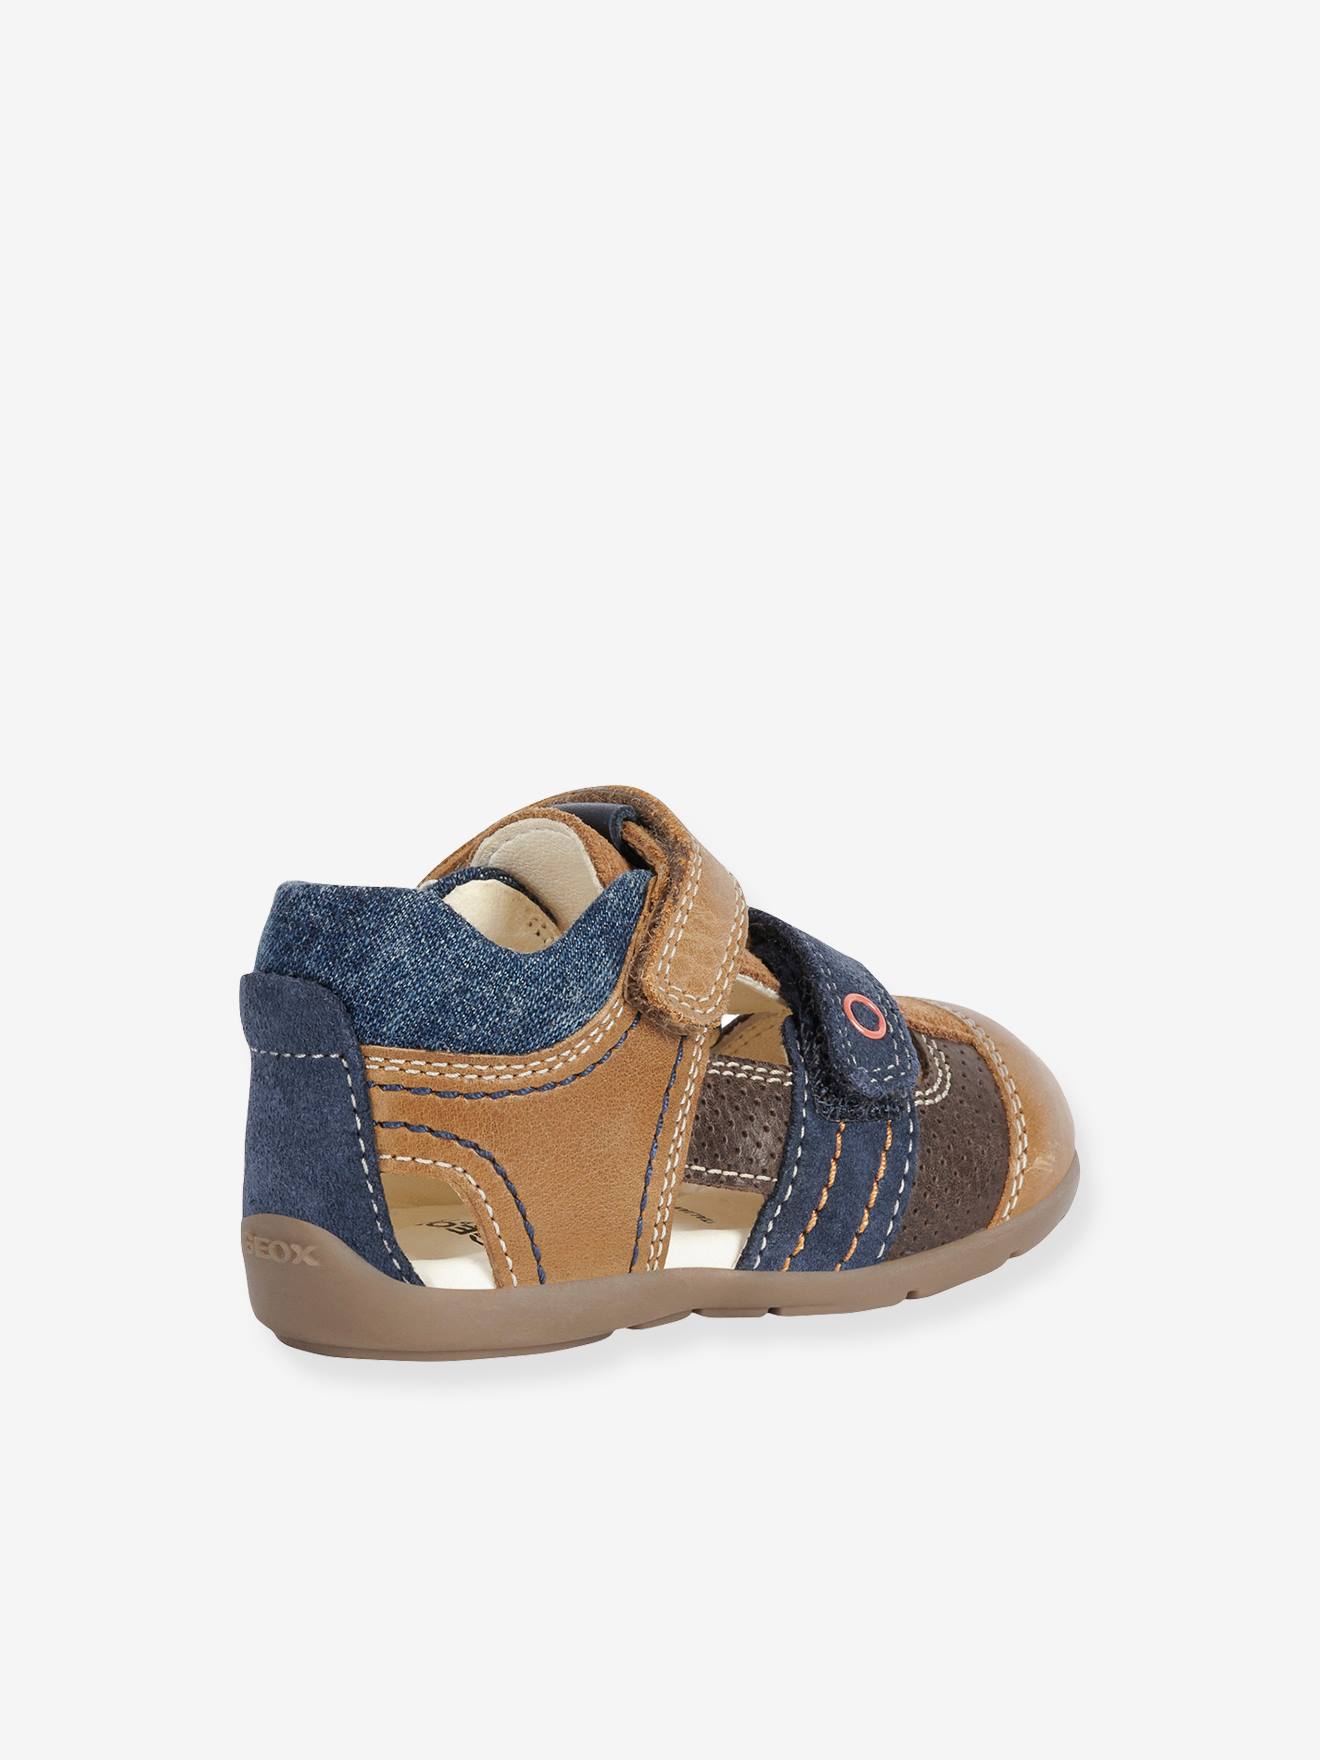 Bemiddelaar merknaam pint Sandals for Babies, Kaytan by GEOX® - beige, Shoes